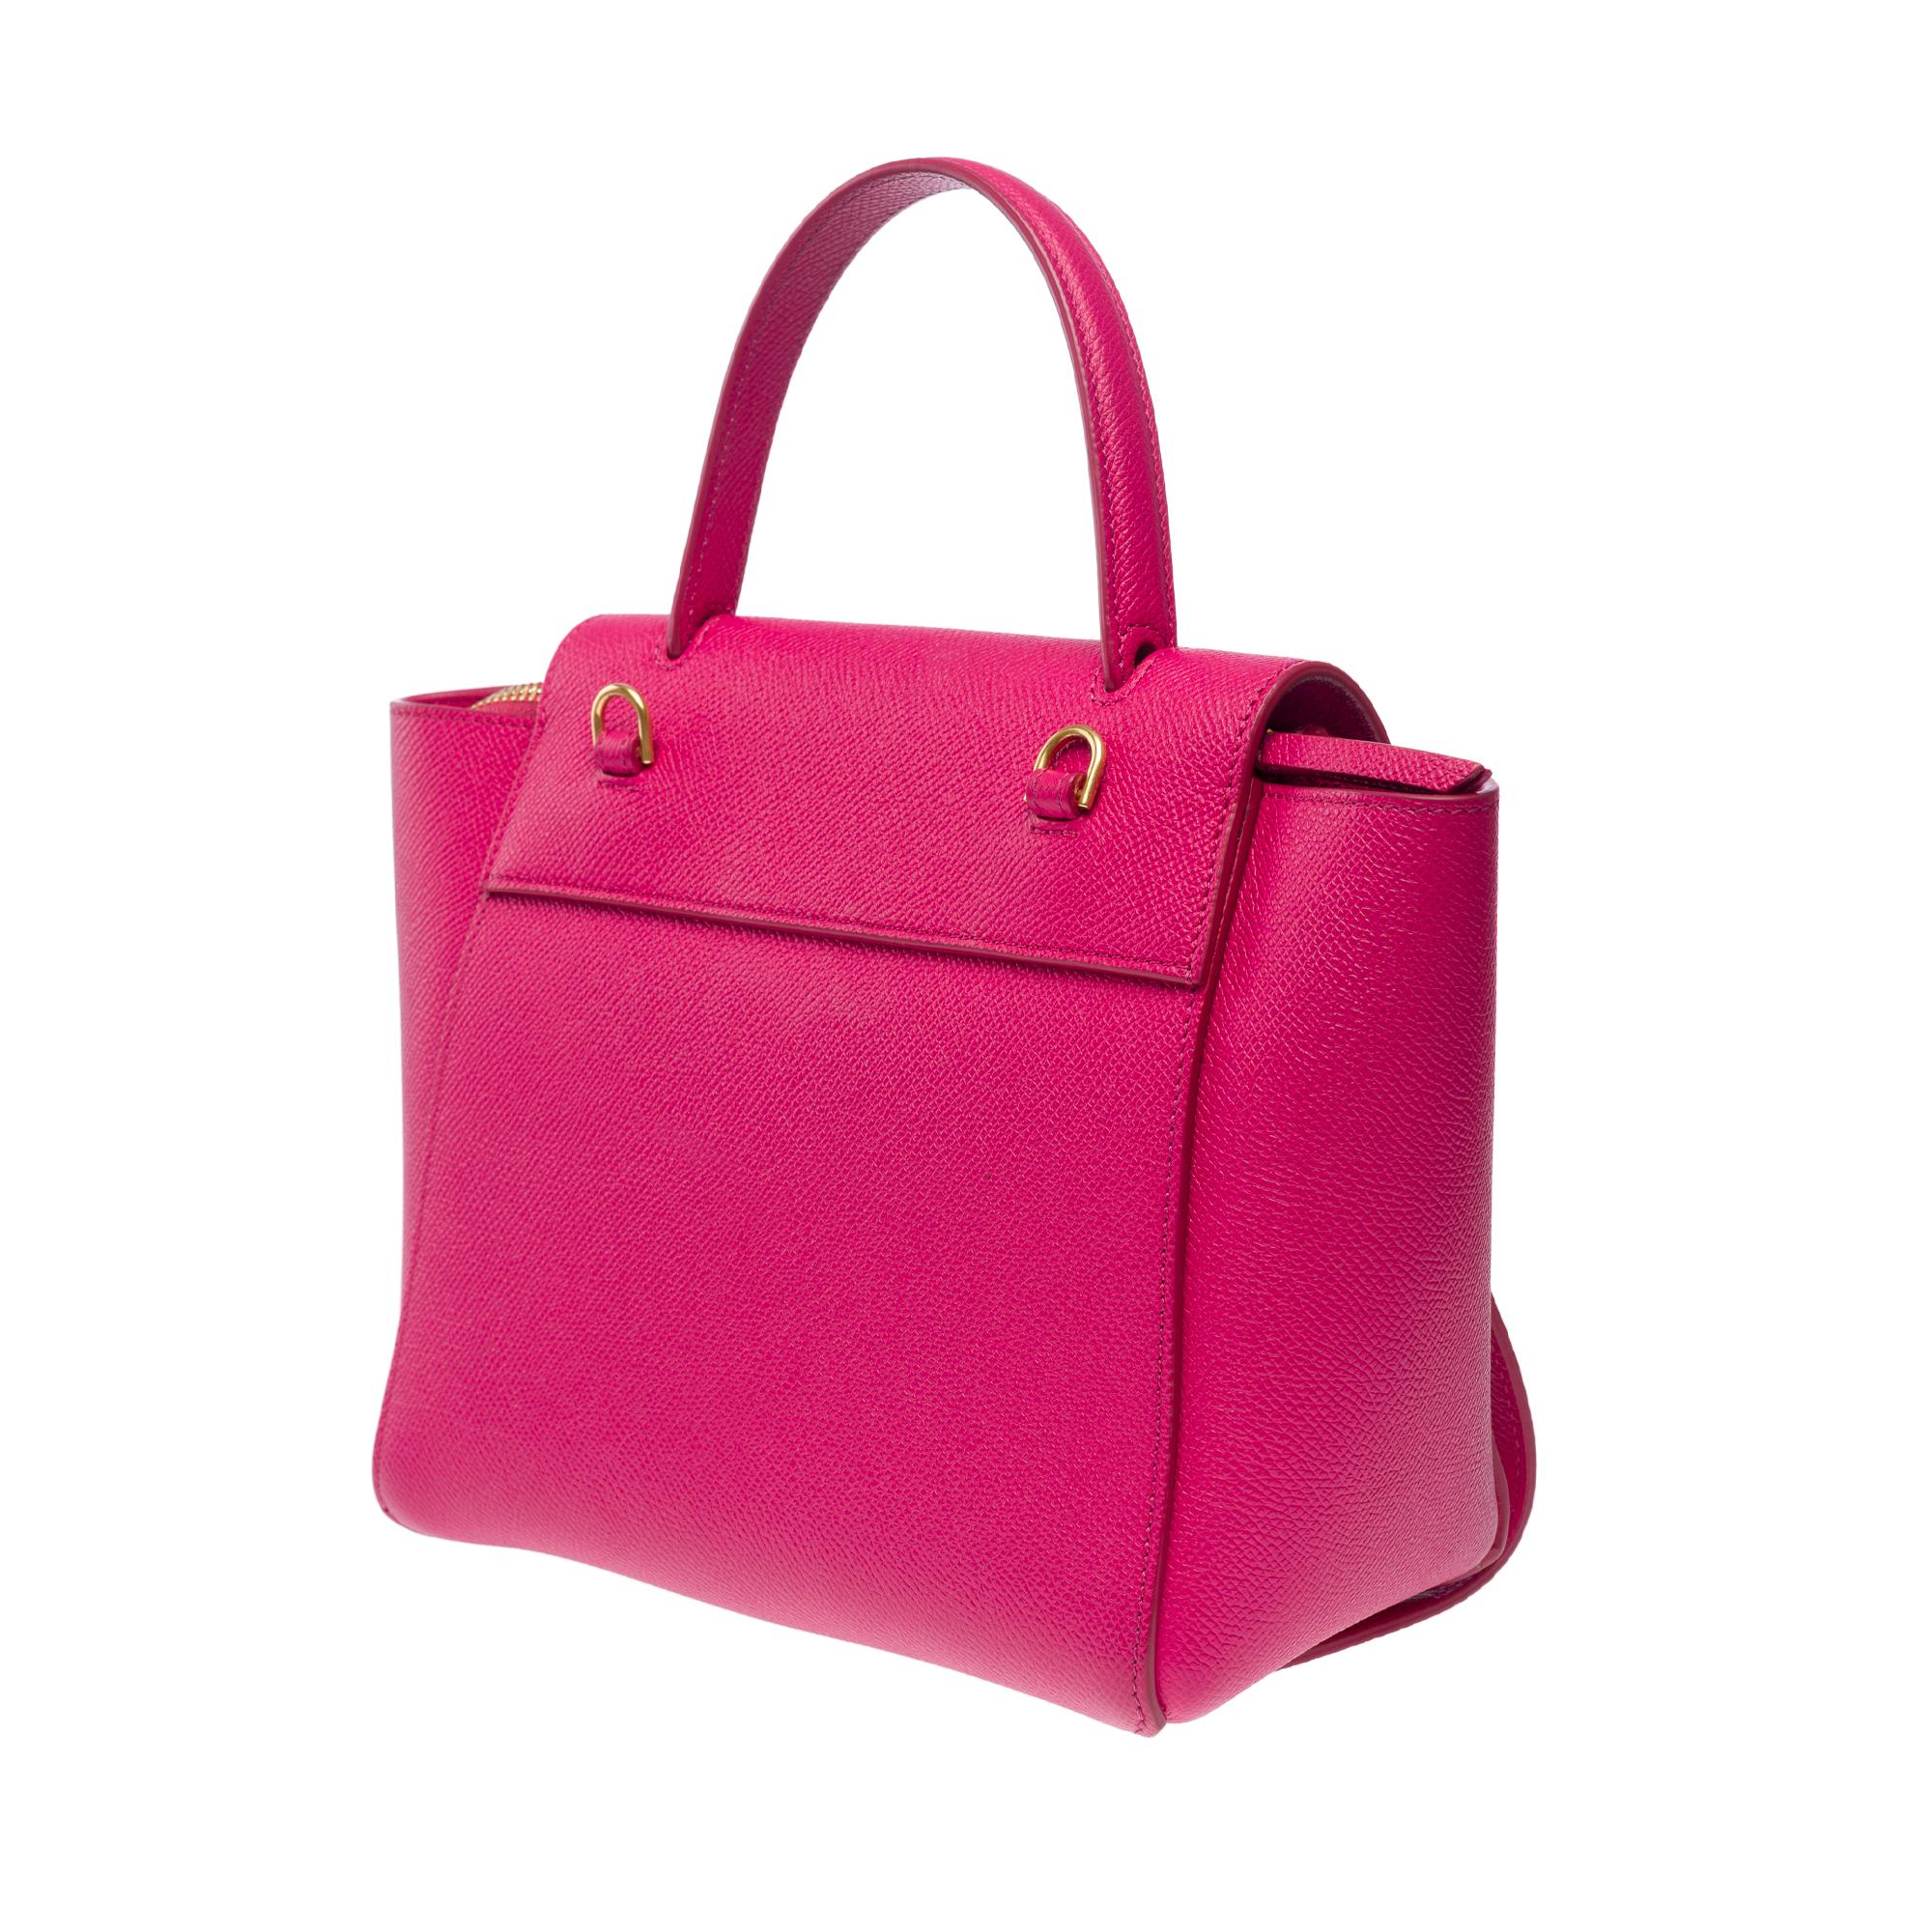 Celine Belt Nano handbag strap in pink calf leather, GHW For Sale 3